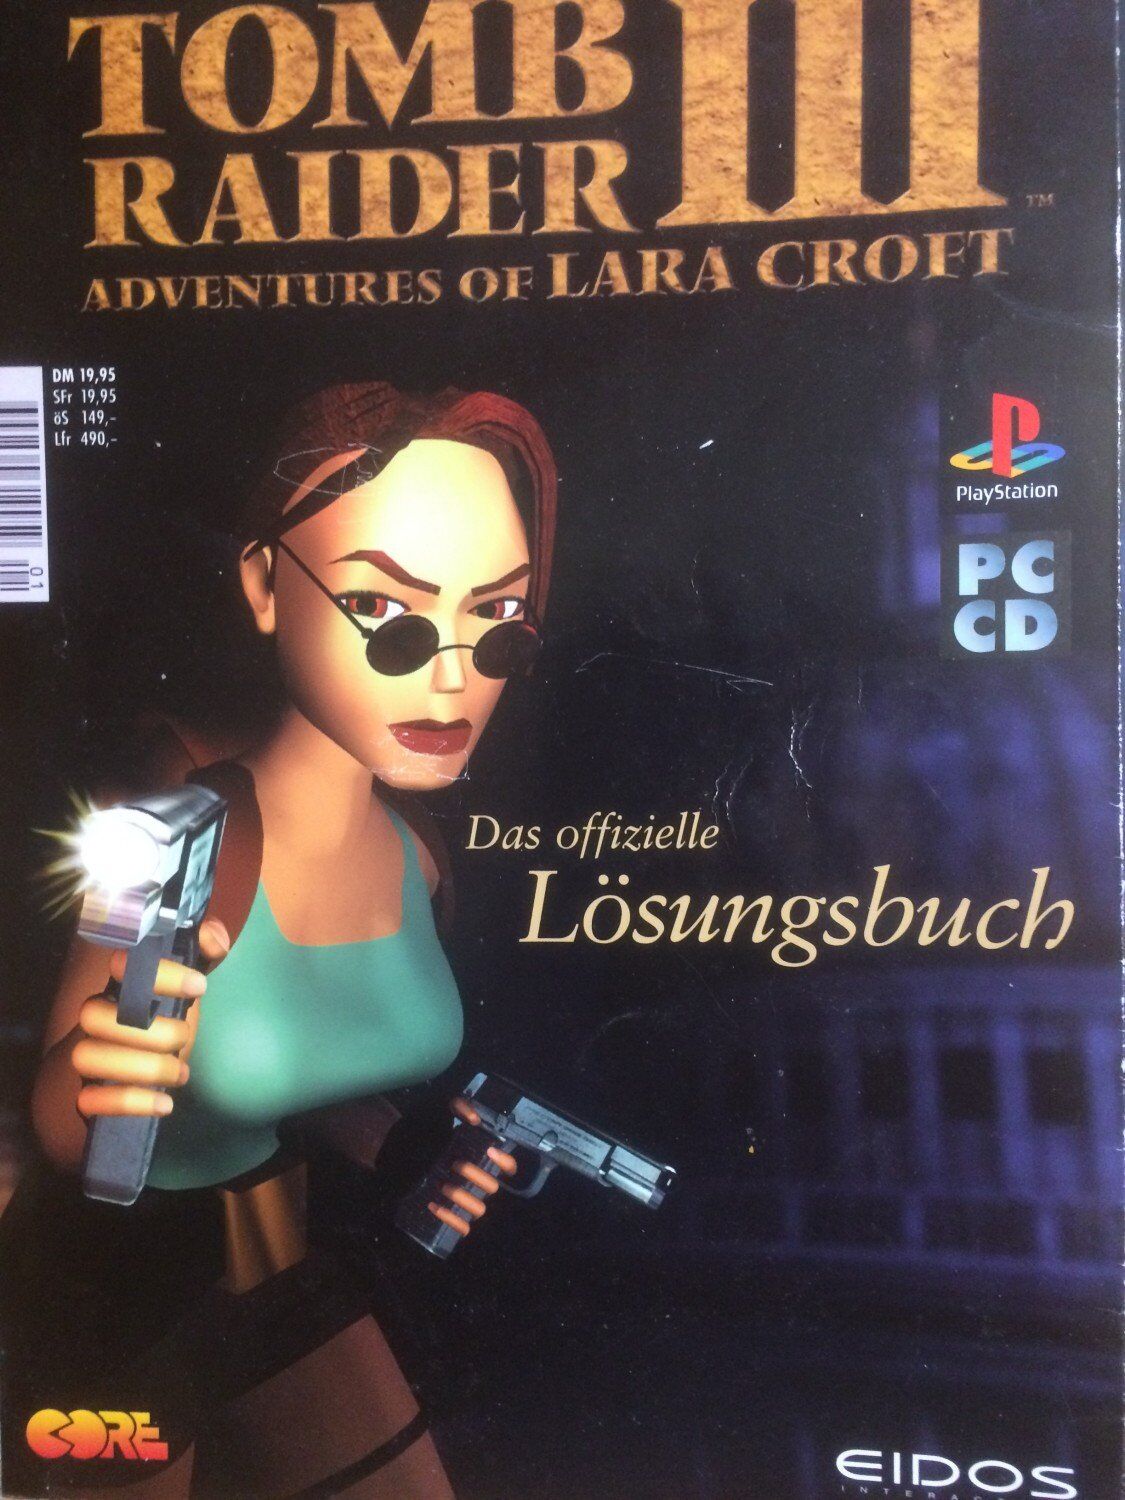 Tomb Raider III - Adventures Of Lara Croft - das offizielle Lösungsbuch - DE